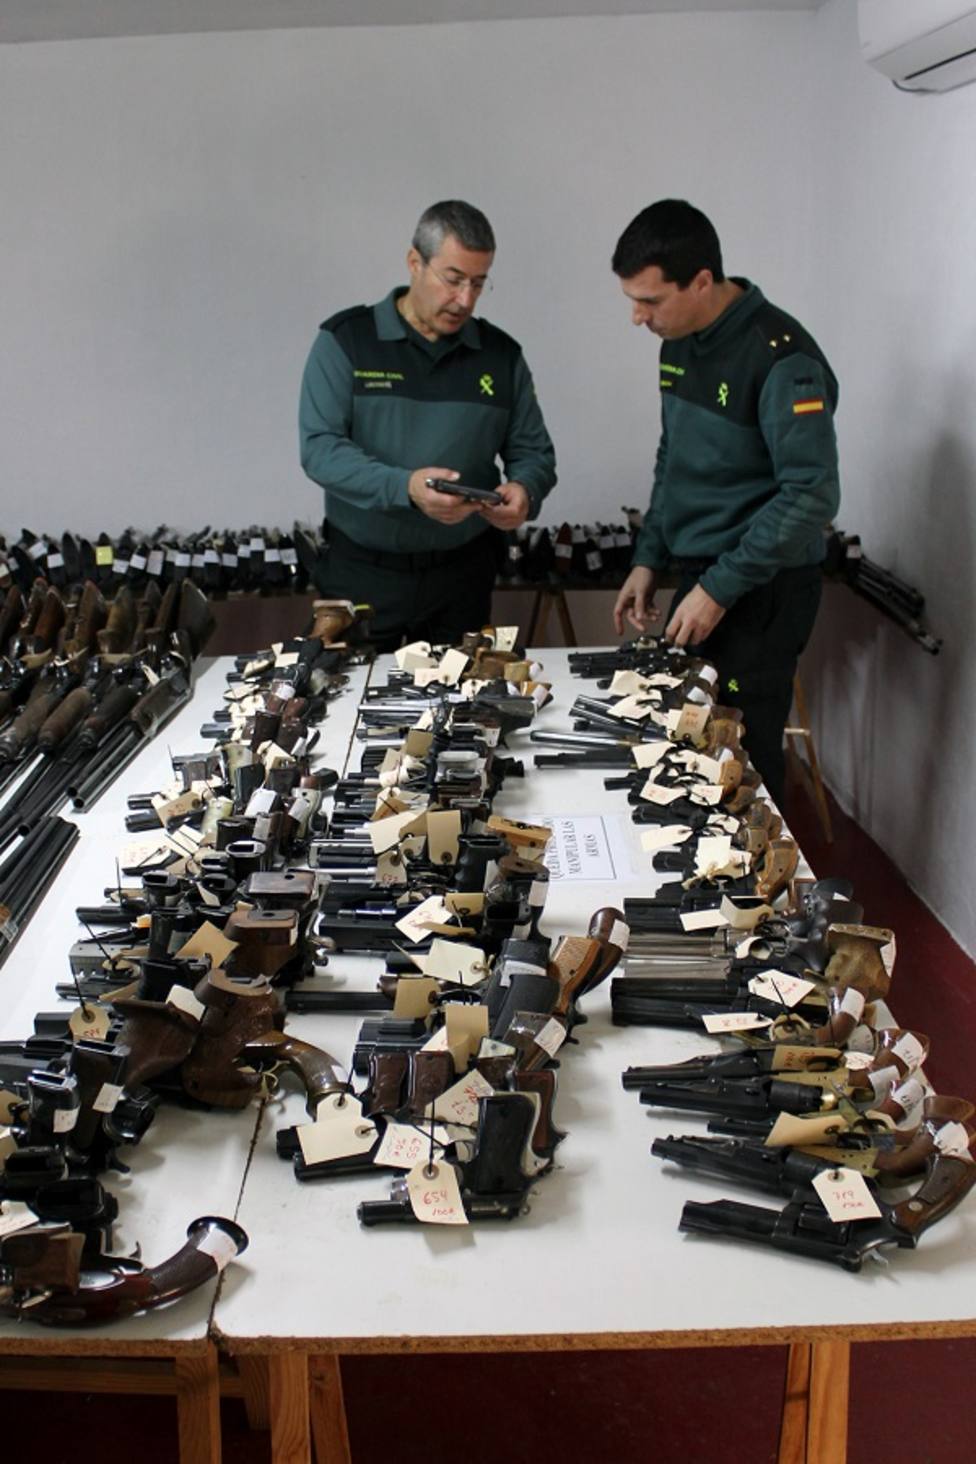 La Guardia Civil de Murcia celebra la exposición-subasta de armas del año 2019